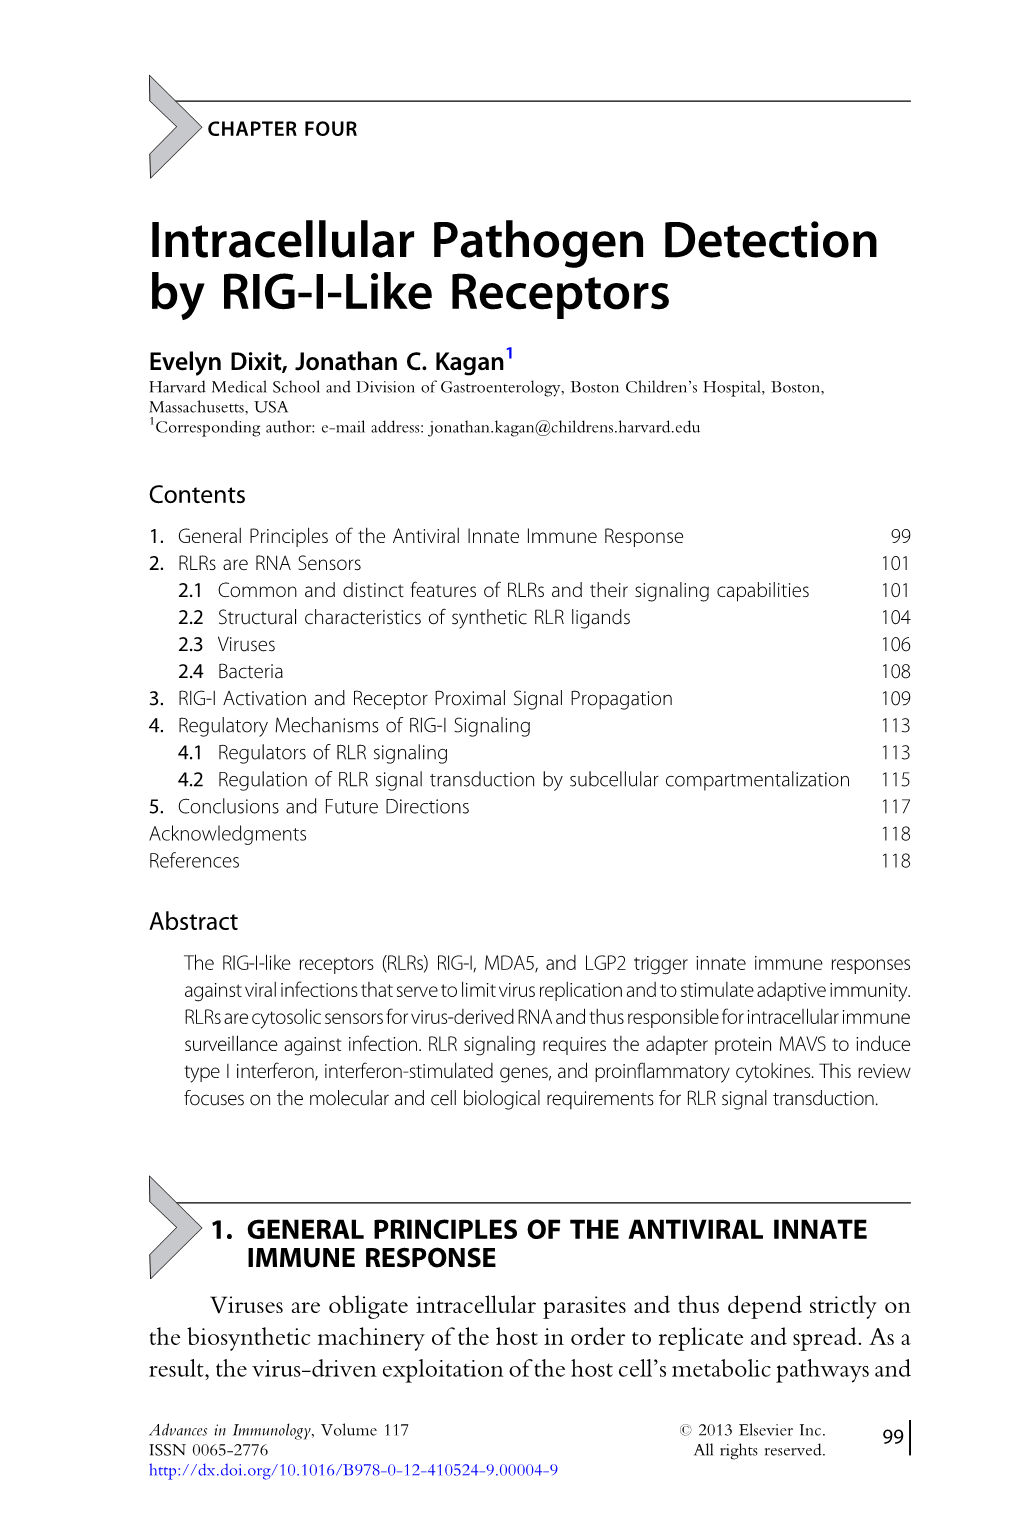 Intracellular Pathogen Detection by RIG-I-Like Receptors